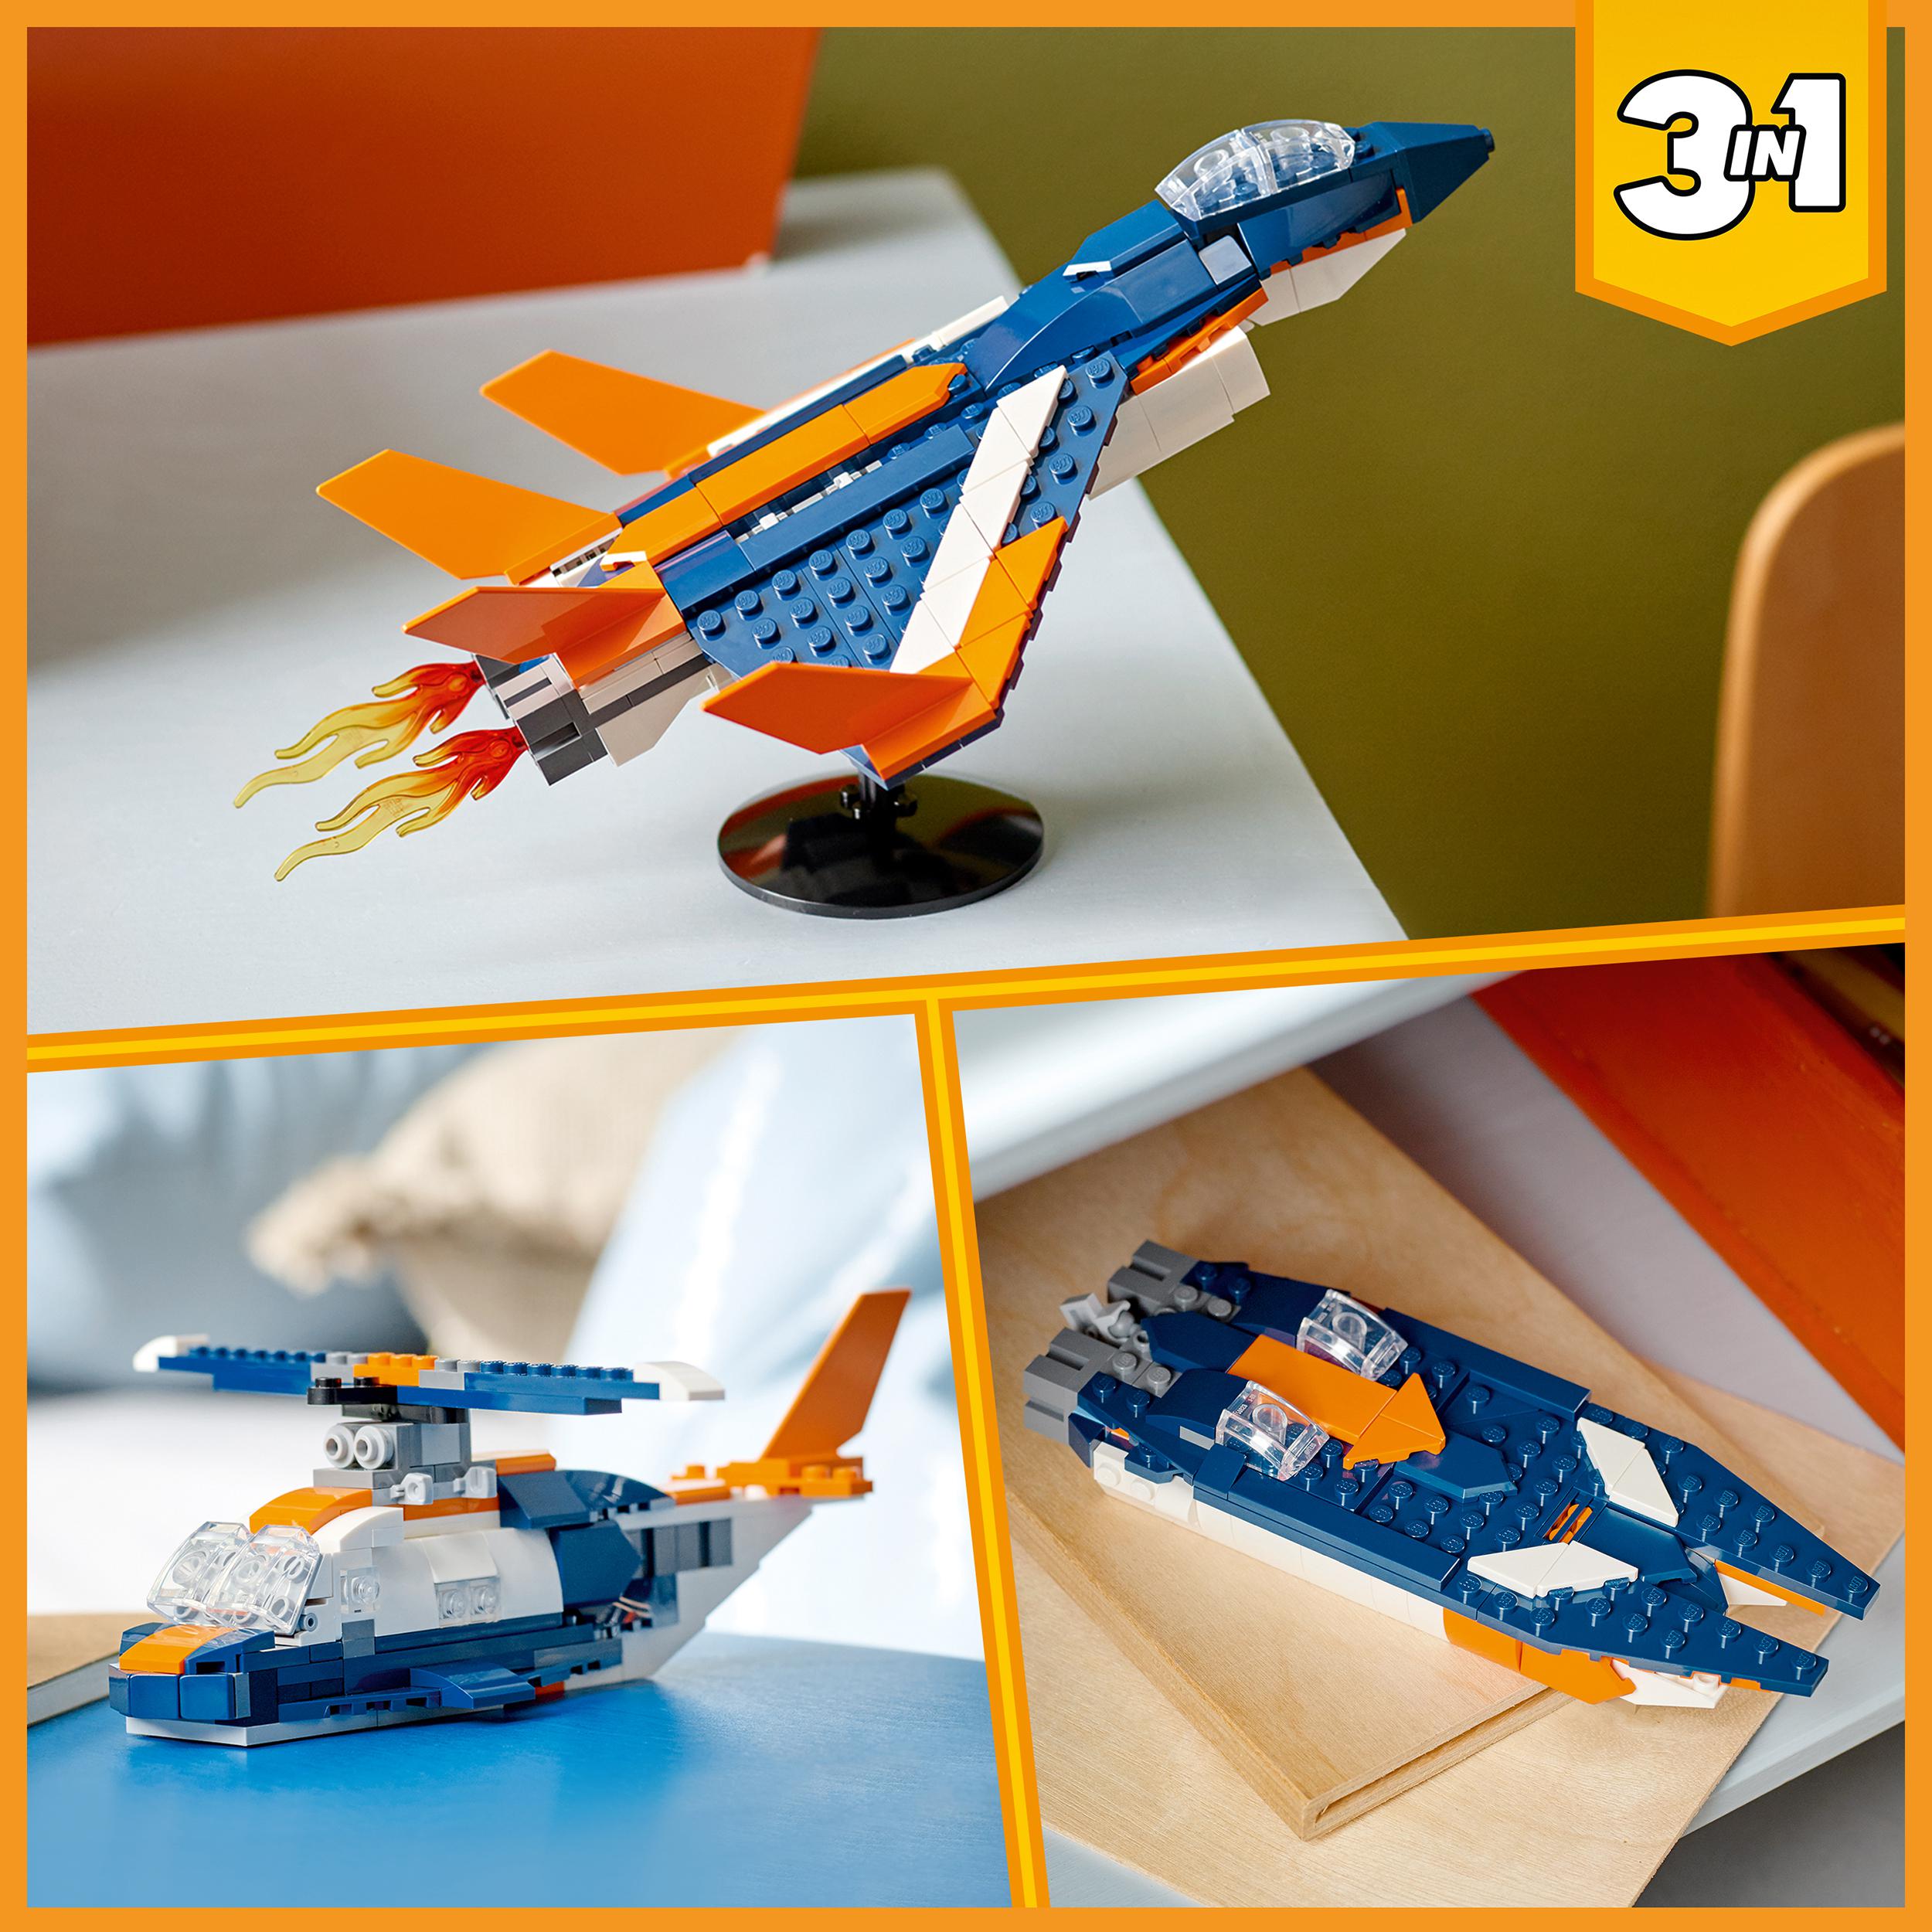 LEGO Creator Supersonic-jet 31126